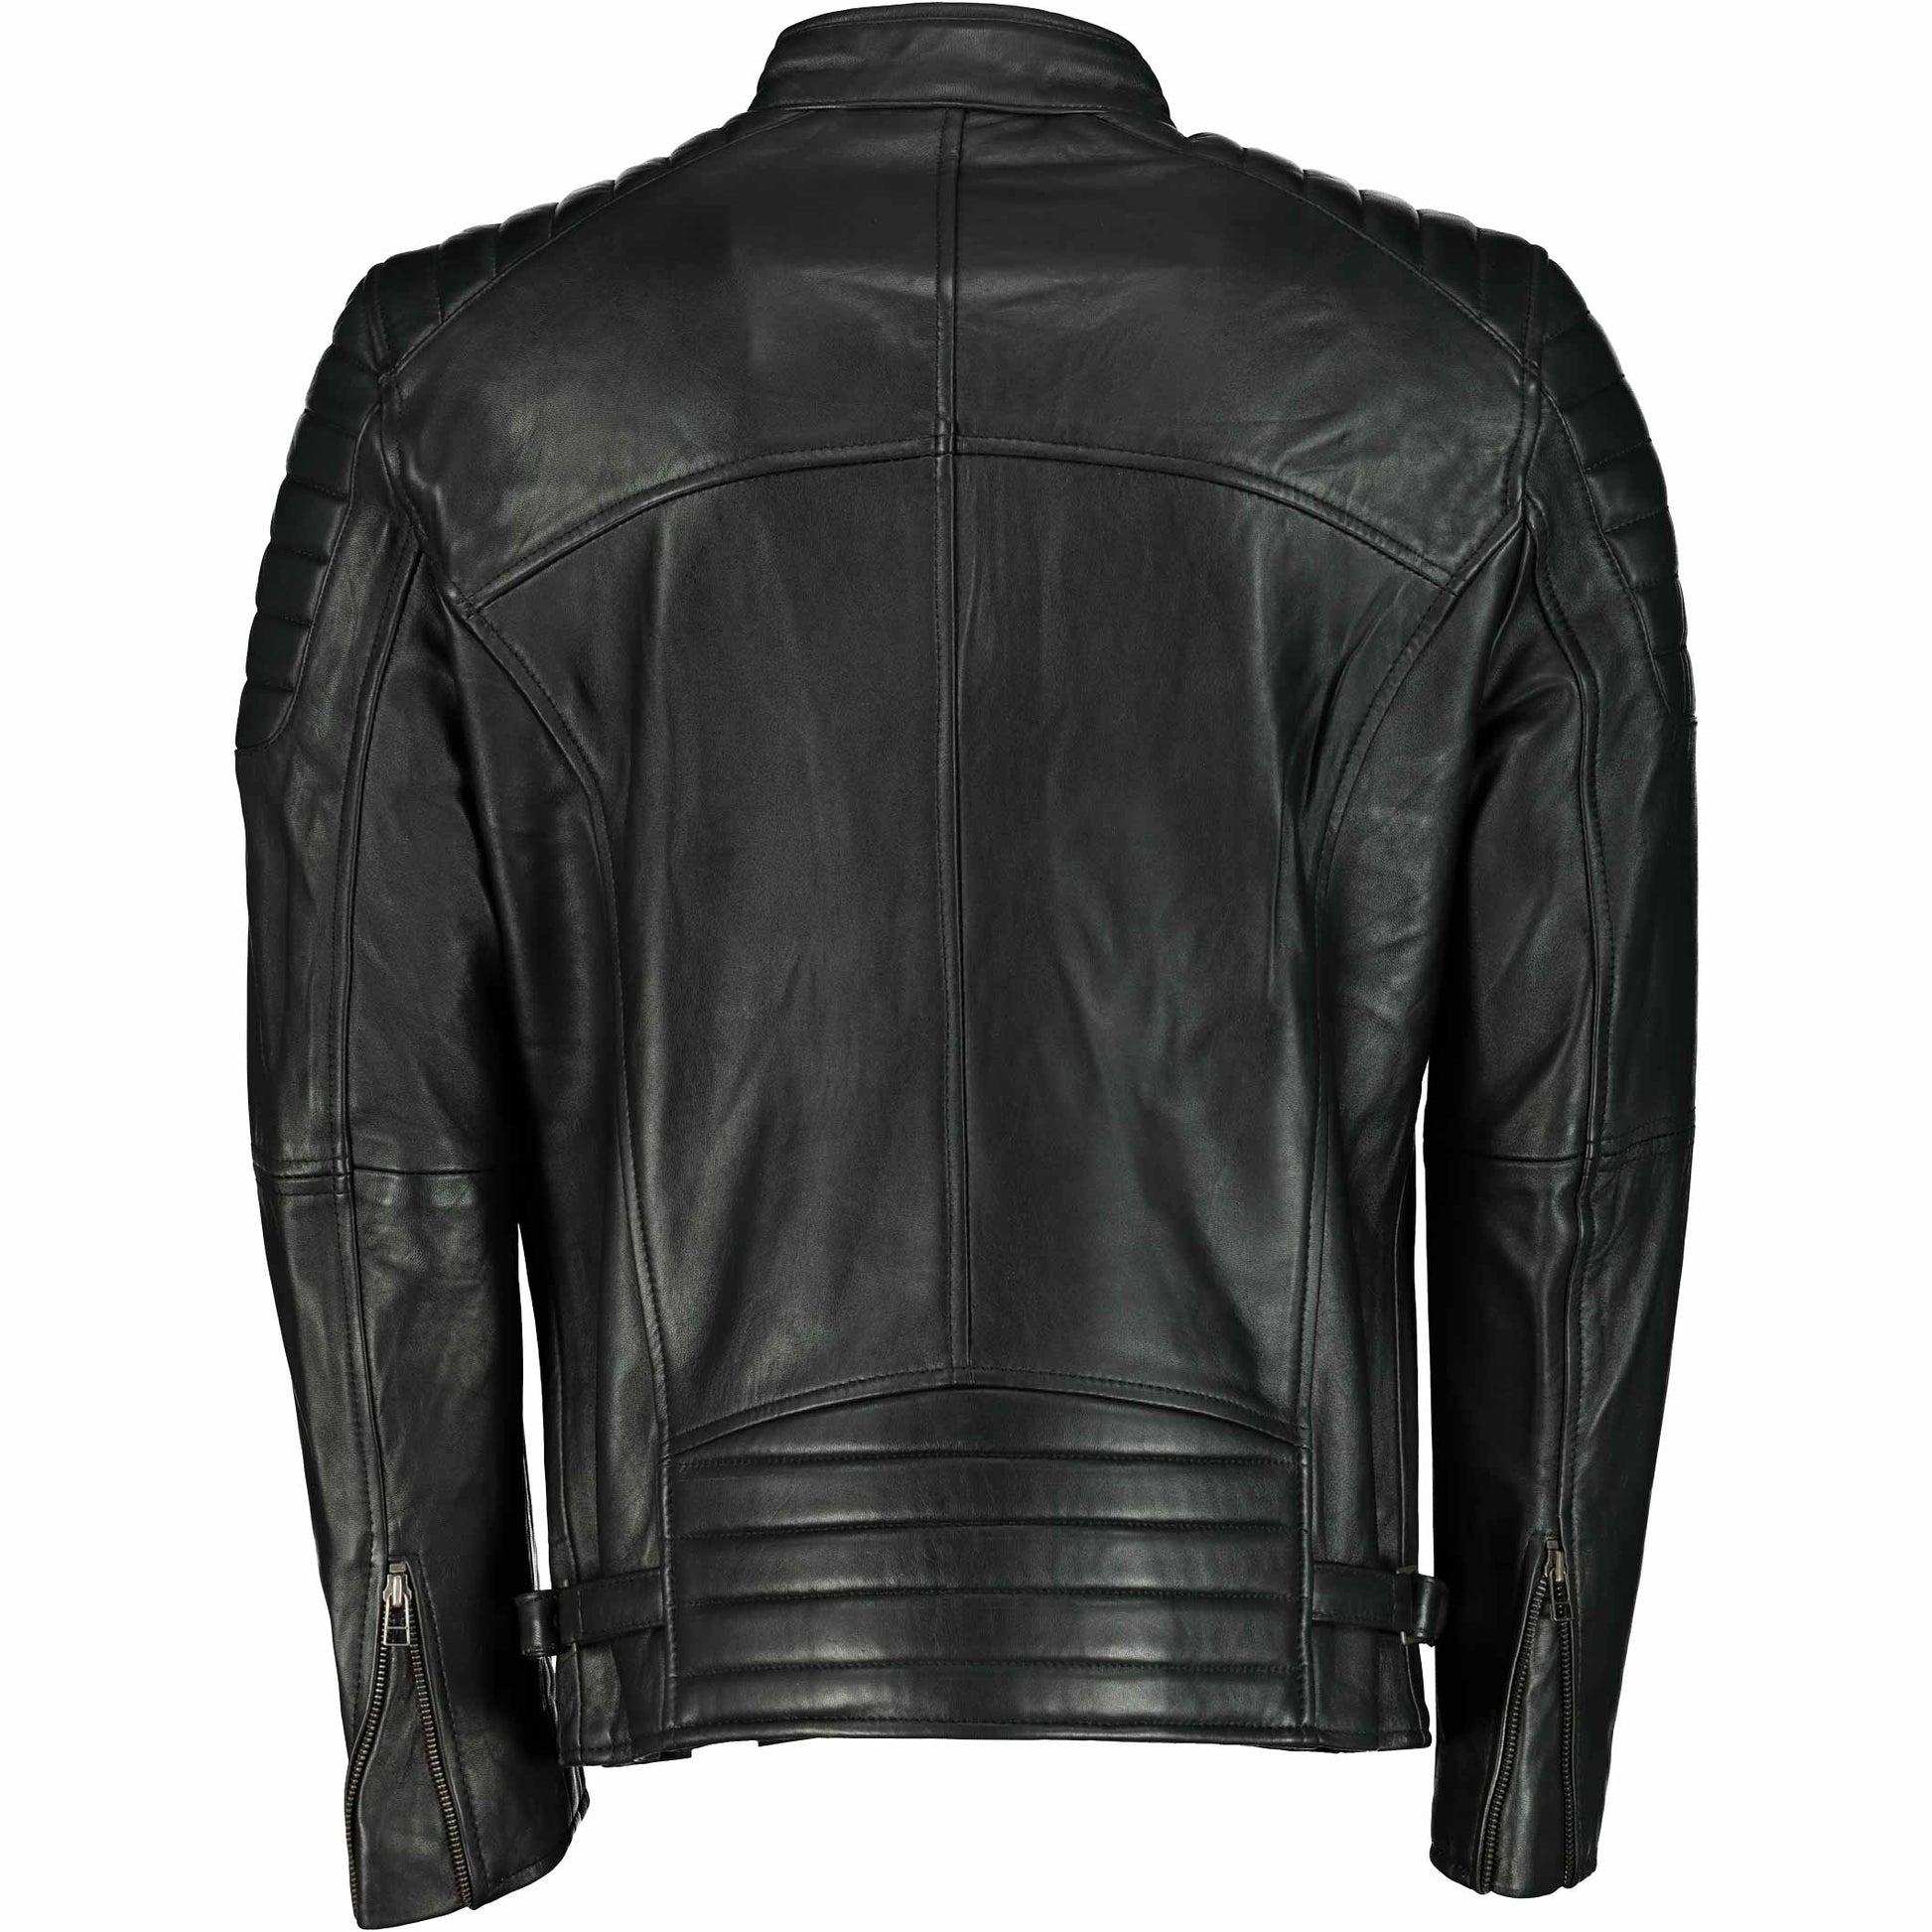 Men's Billy-J Black Leather Jacket- Supreme Leather Supreme Leather